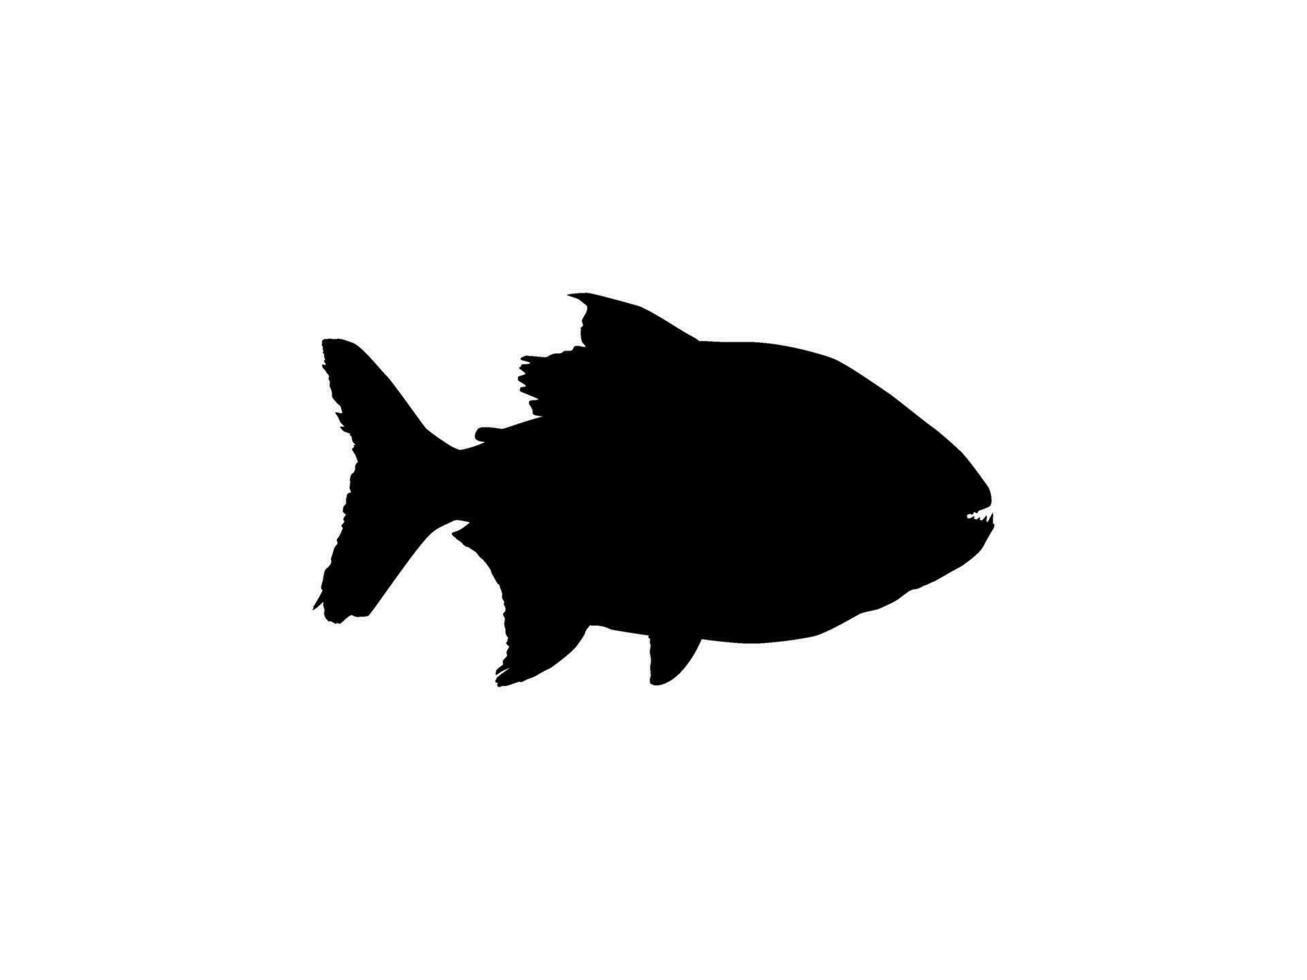 piranha poisson silhouette, pouvez utilisation pour logo gramme, site Internet, art illustration, pictogramme, icône ou graphique conception élément. vecteur illustration